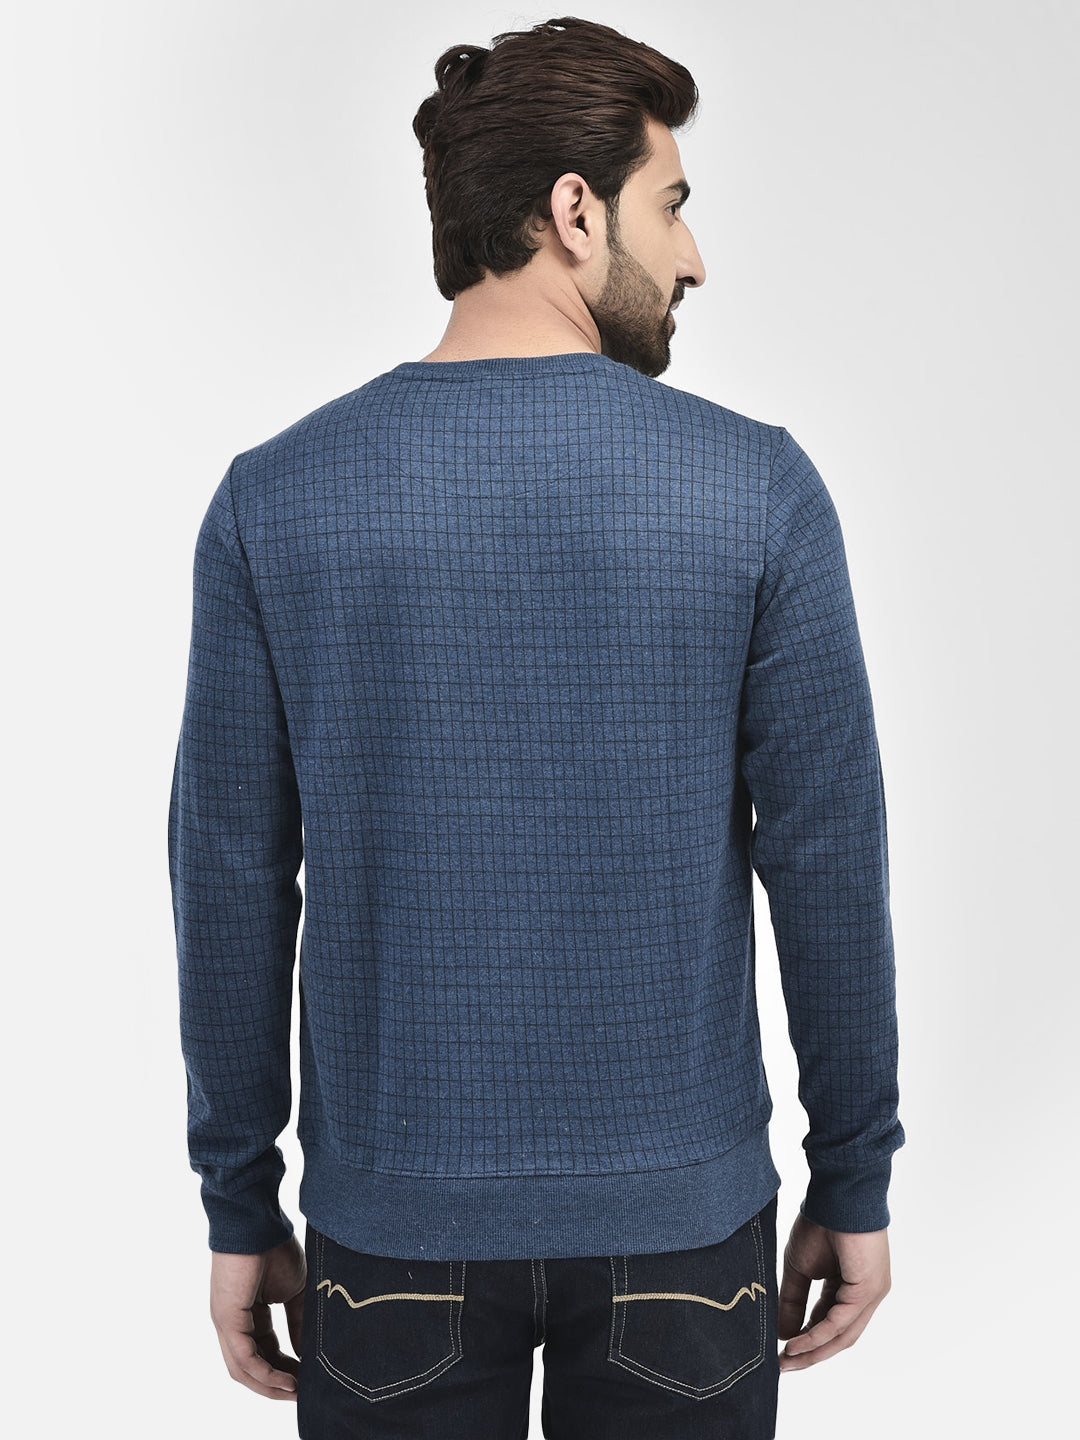 Navy Blue Printed Sweatshirt.